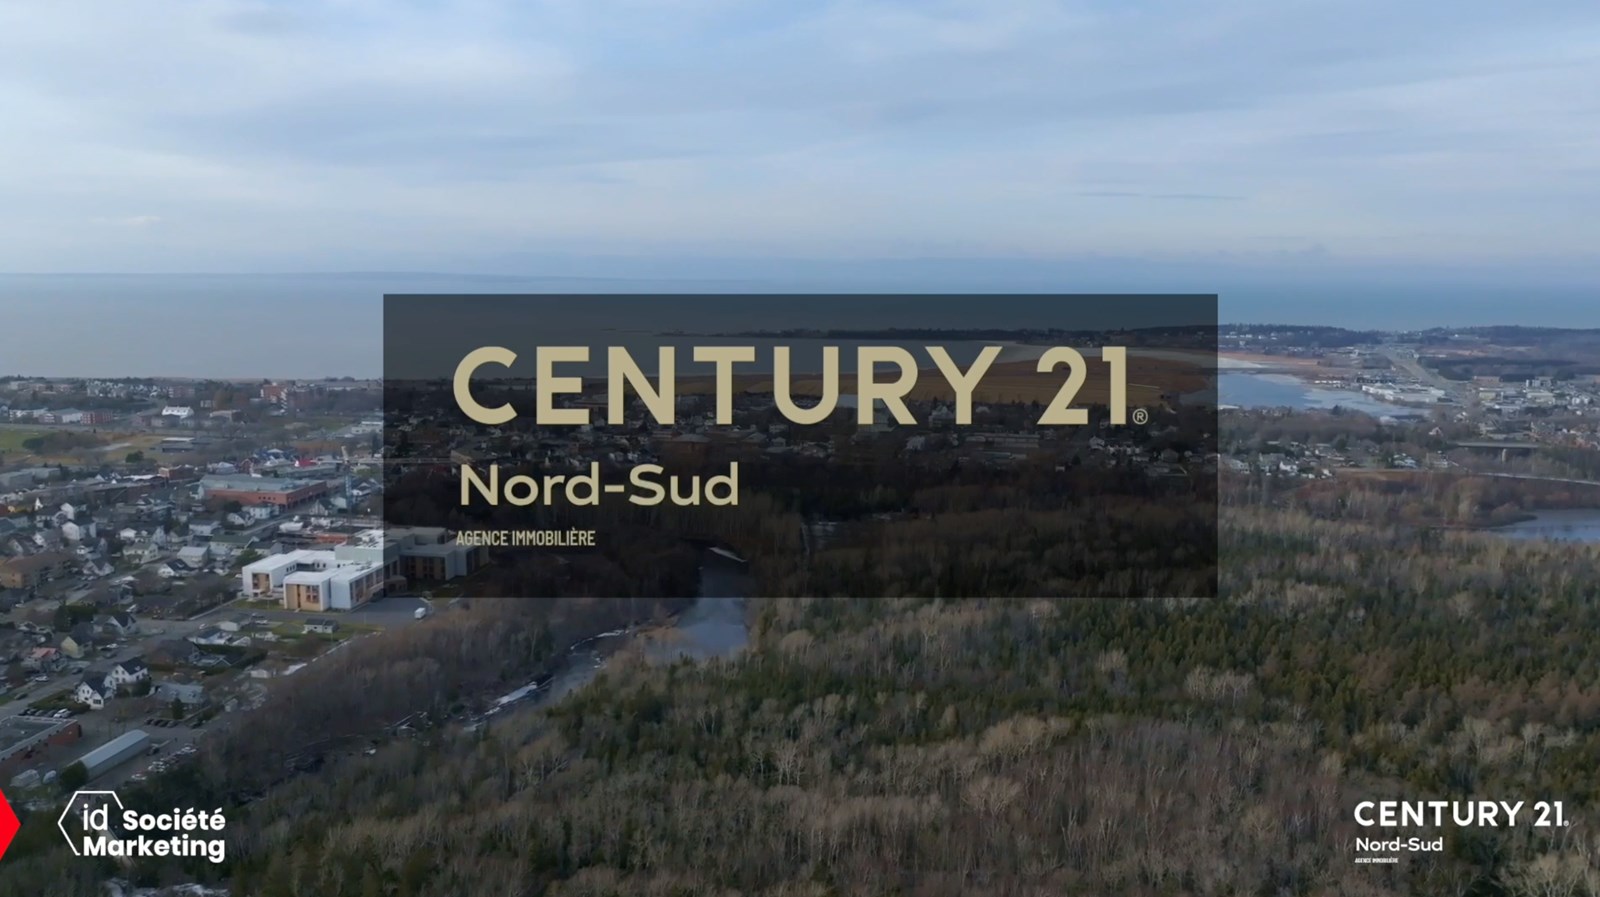 Century 21 Nord-Sud